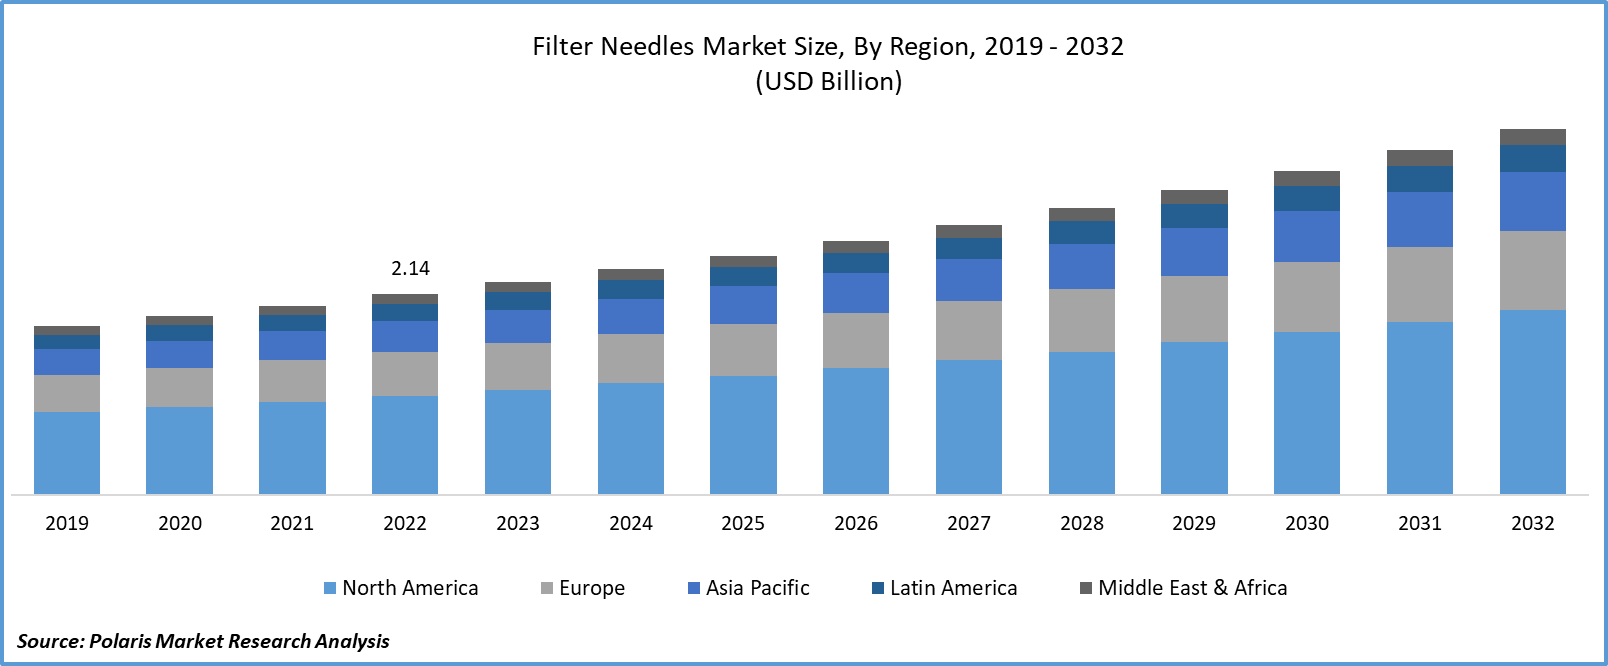 Filter Needles Market Size